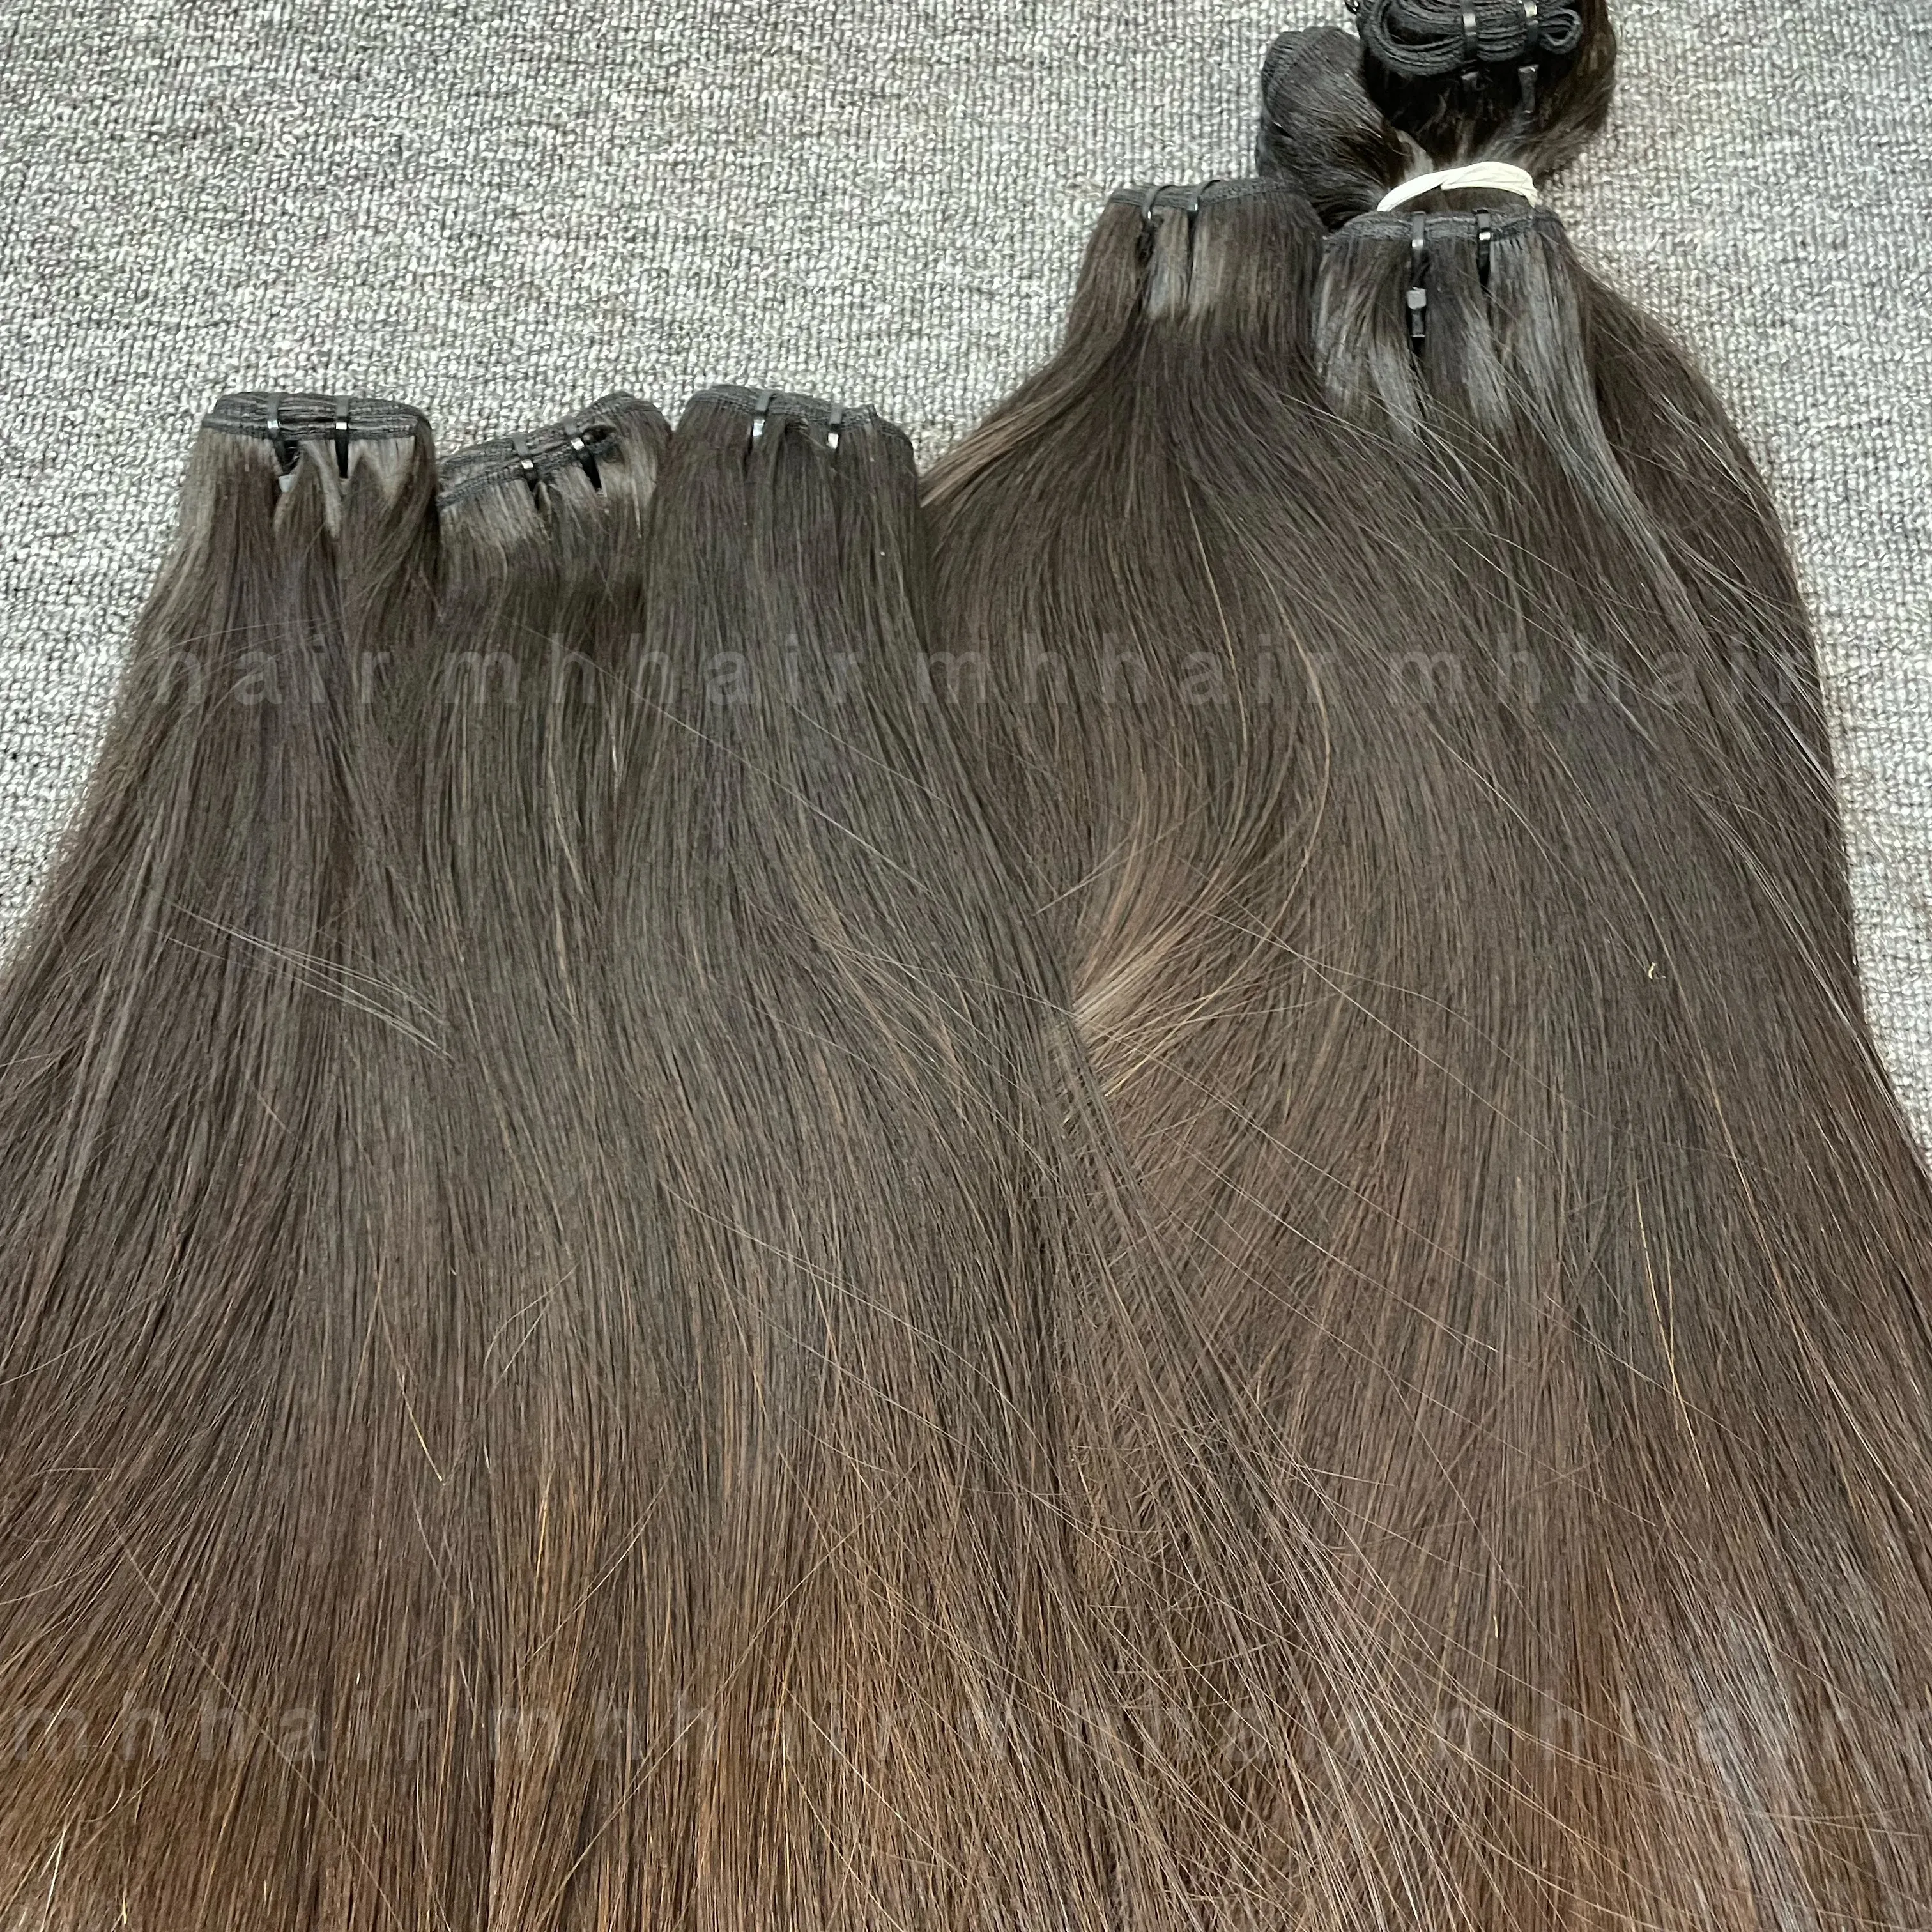 Capelli grezzi fasci vietnamiti capelli lisci, il colore naturale può tingere a colori più chiari ossa capelli umani lisci pronti per la spedizione